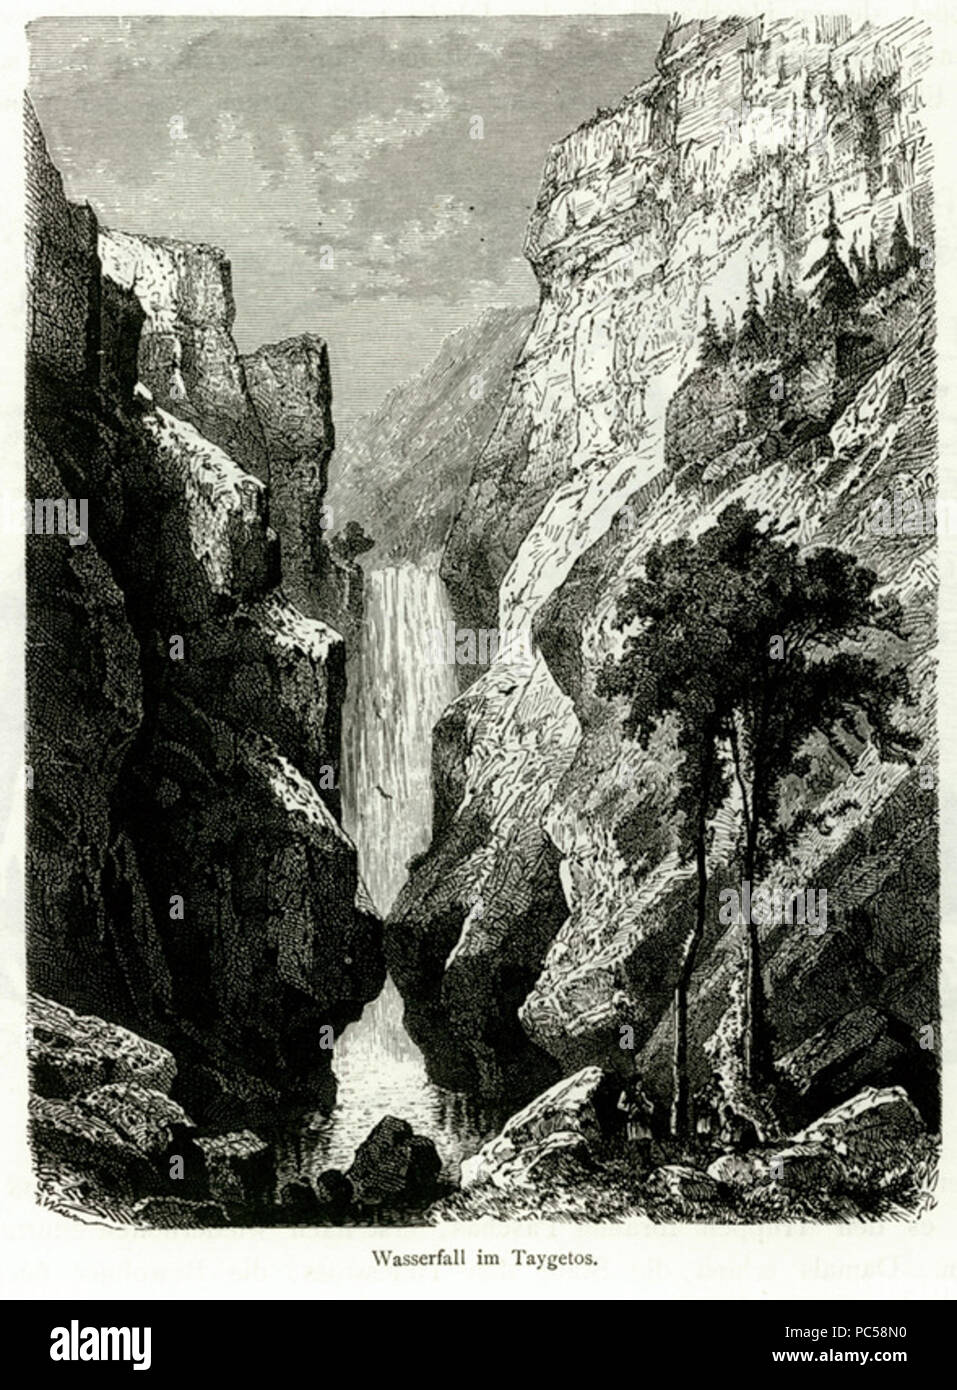 643 Wasserfall im Taigetos - Schweiger Lerchenfeld Amand (Freiherr von) - 1887 Foto Stock